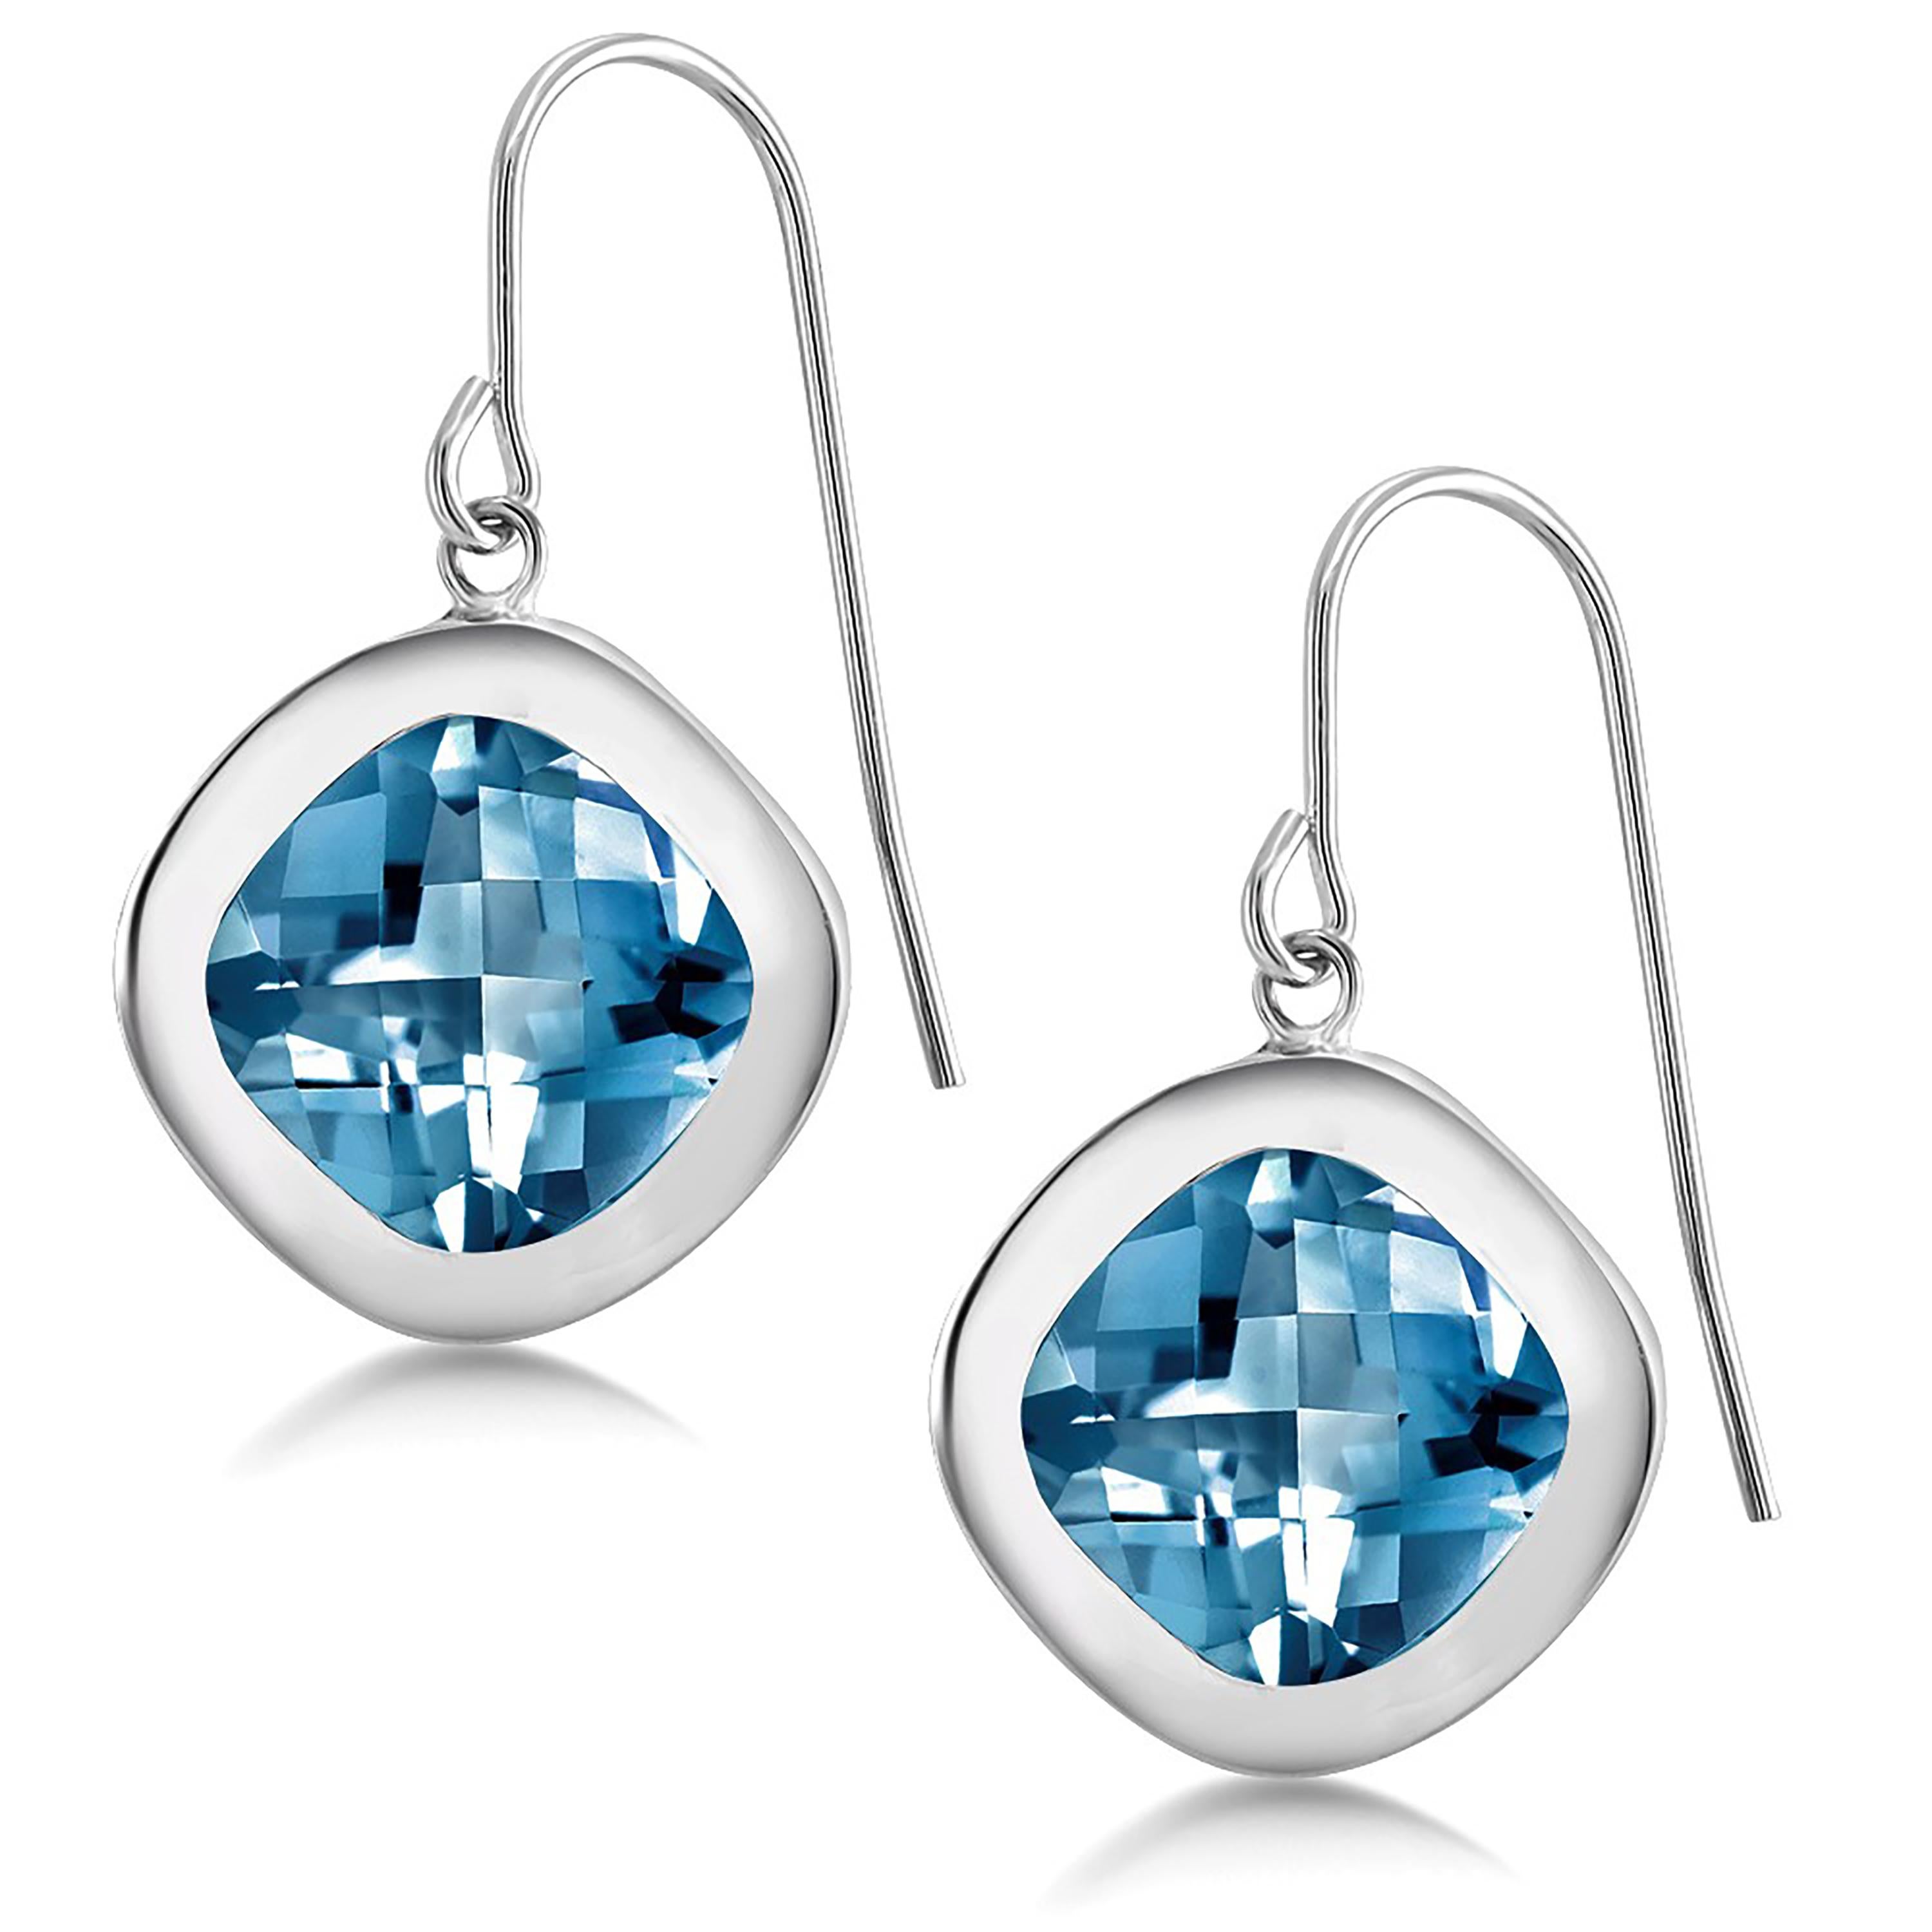 Sterling silver hoop drop earrings
Pair cushion-shape London blue topaz weighing 10 carat
Measuring 0.60